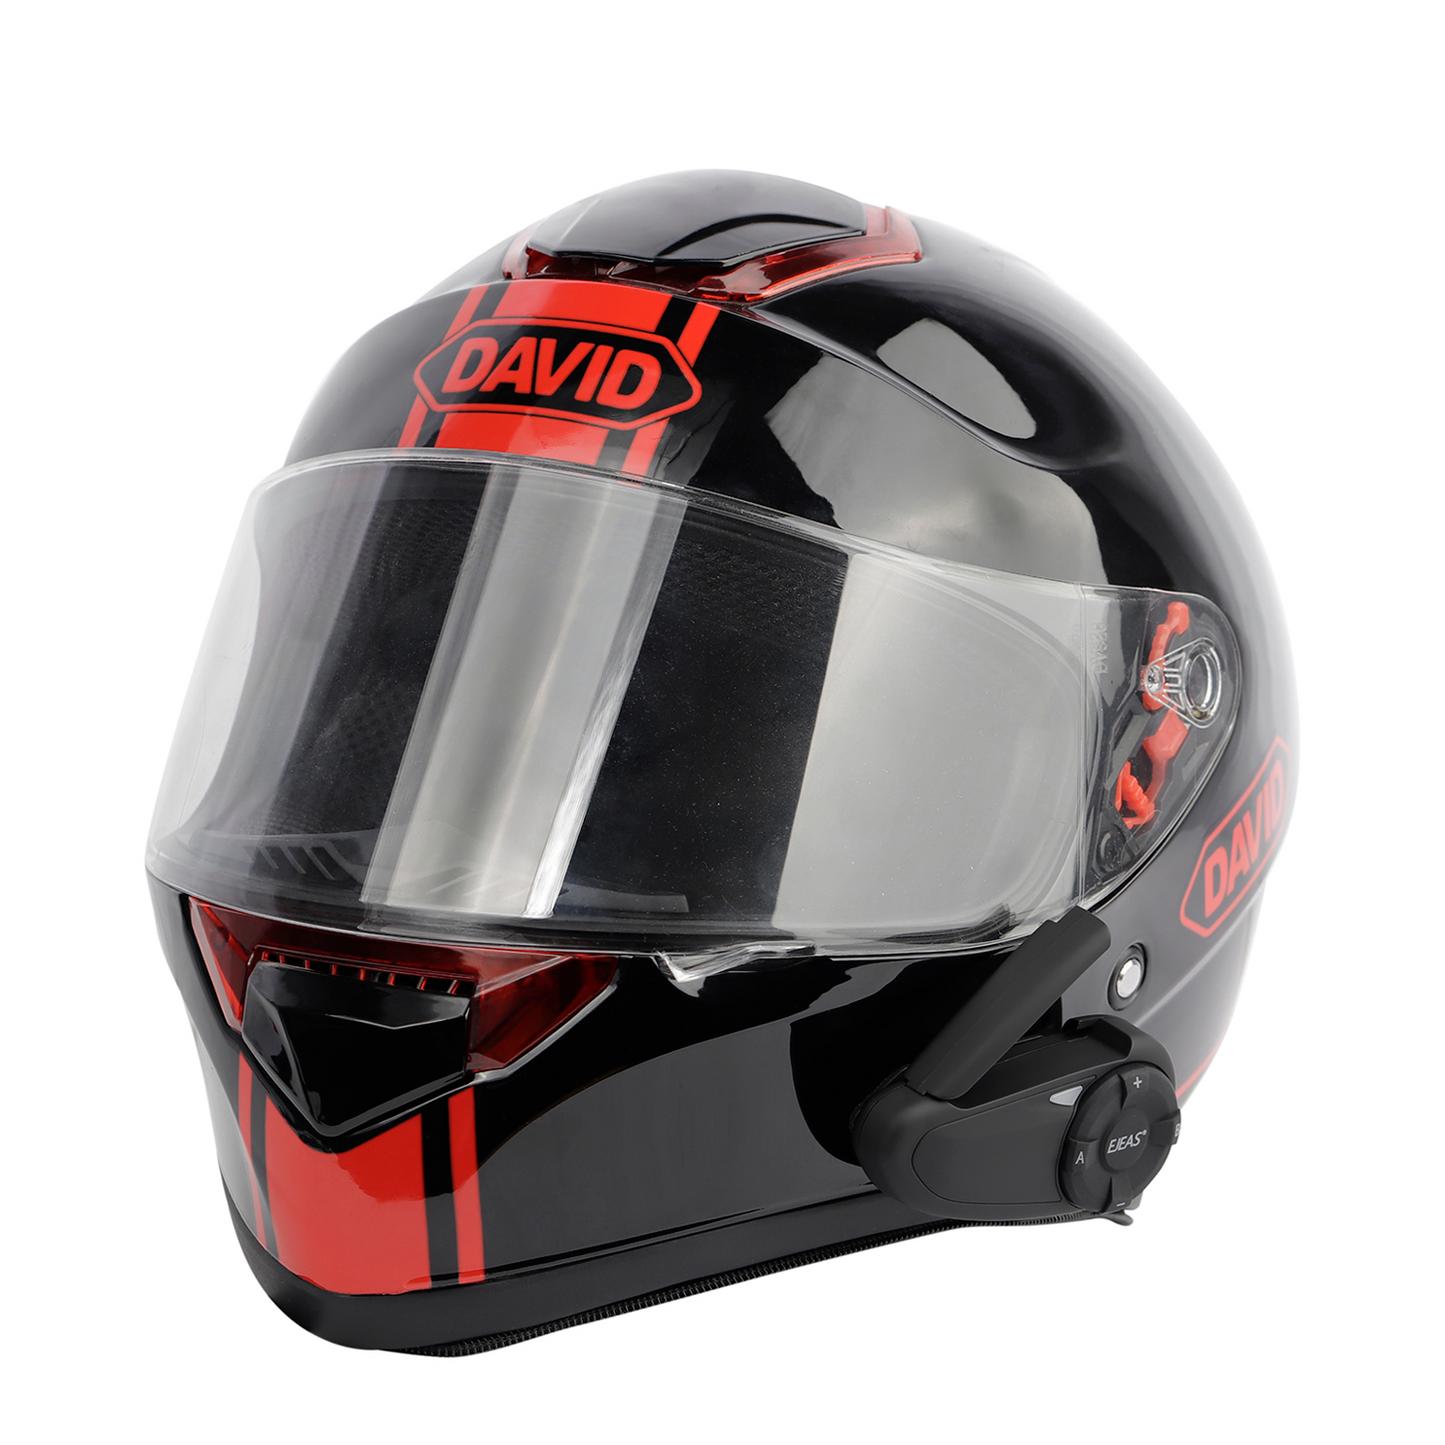 EJEAS Motorcycle Helmet Intercom Headset Clips for Q8/Q7/Q2